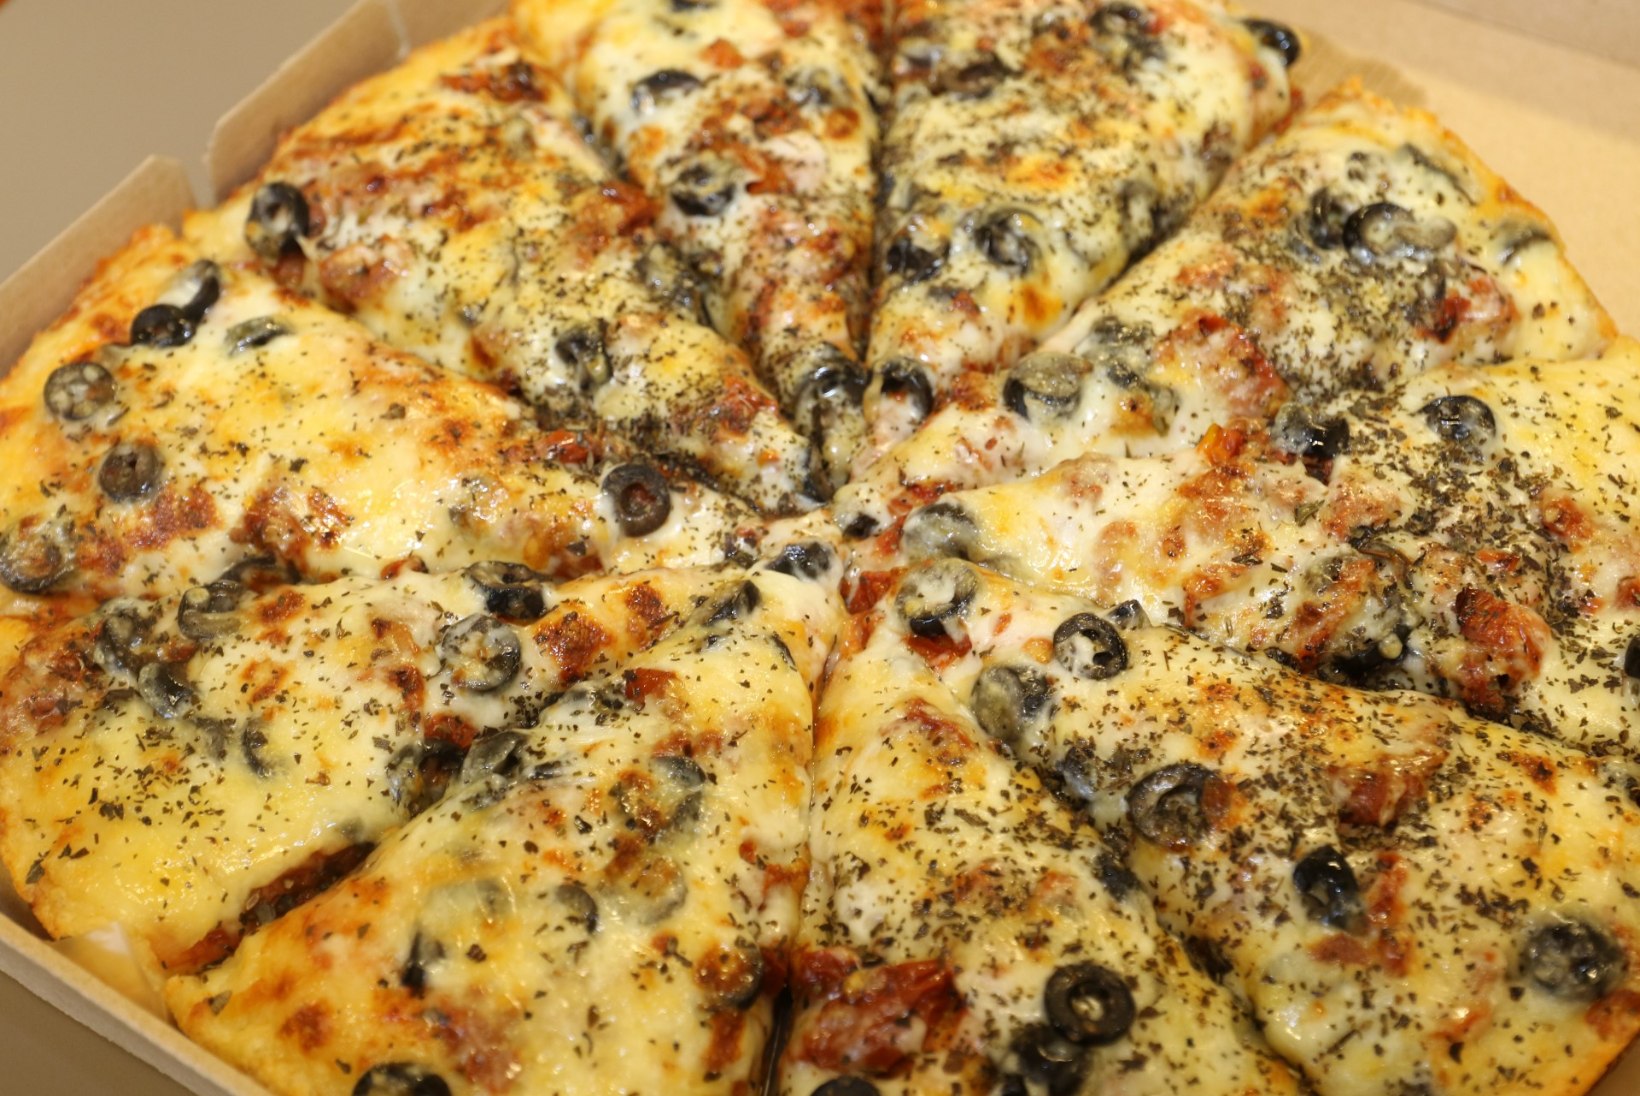 ISUÄRATAV KATSE | Milline on kõige parem pitsa?